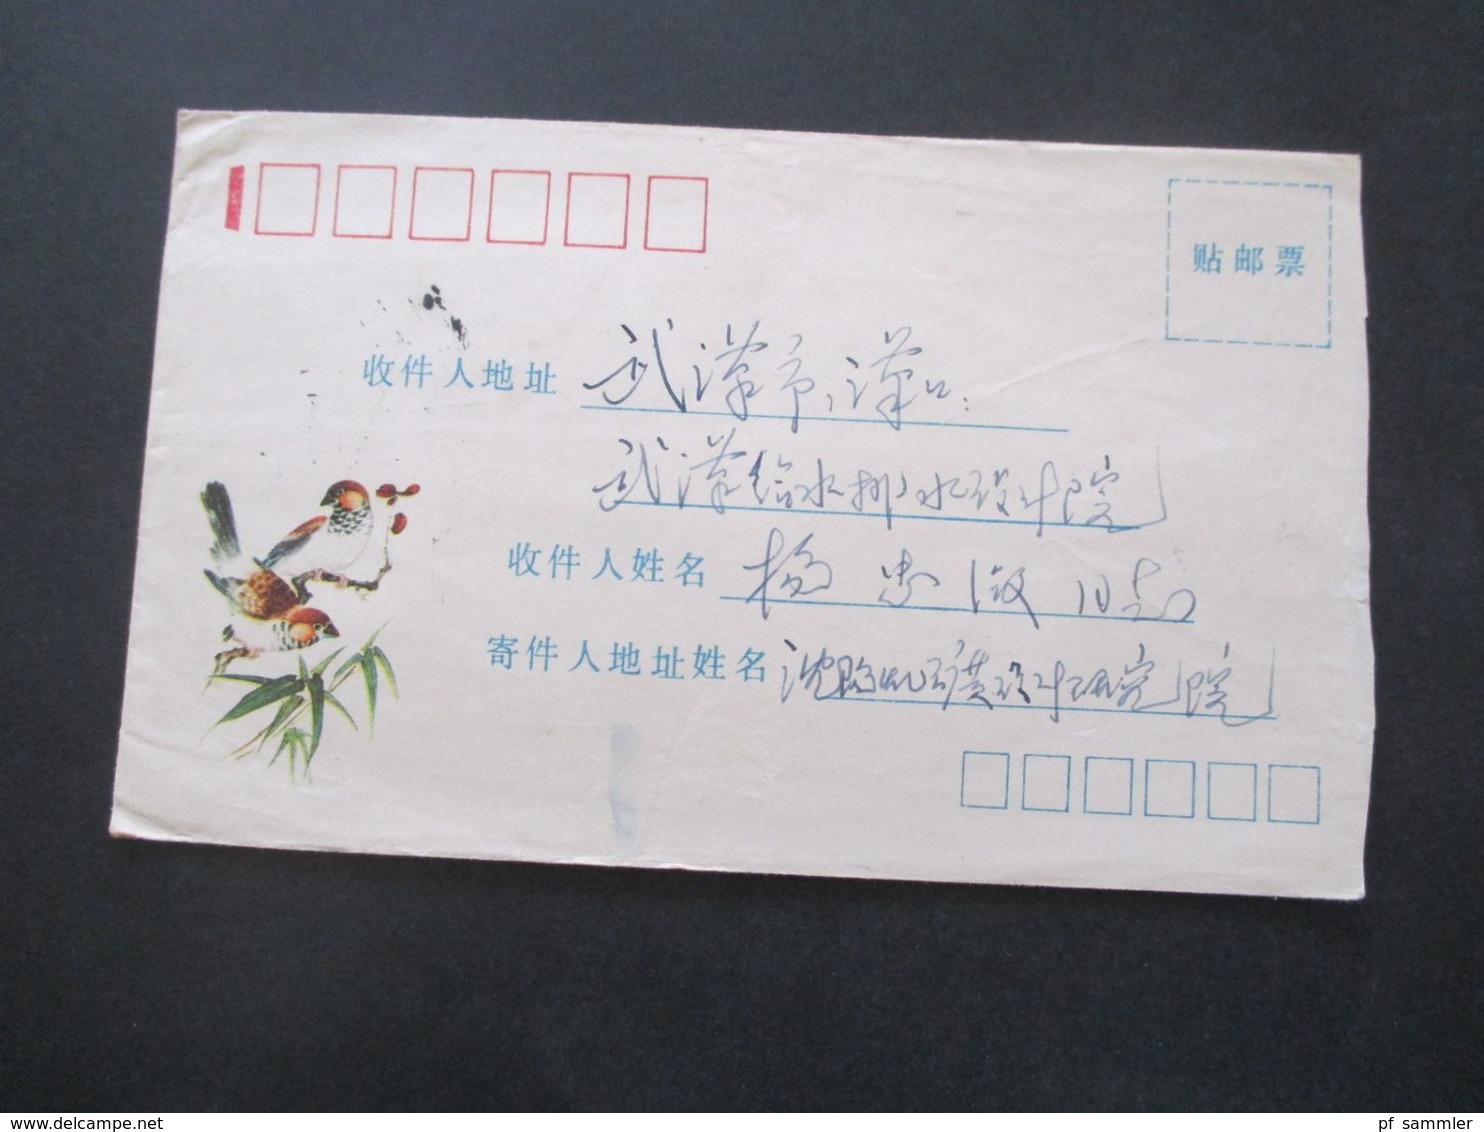 VR China 1970er Jahre Belege Posten 20 Stk. Freimarken Industrie und Landwirtschaft. teilweise mit Inhalt